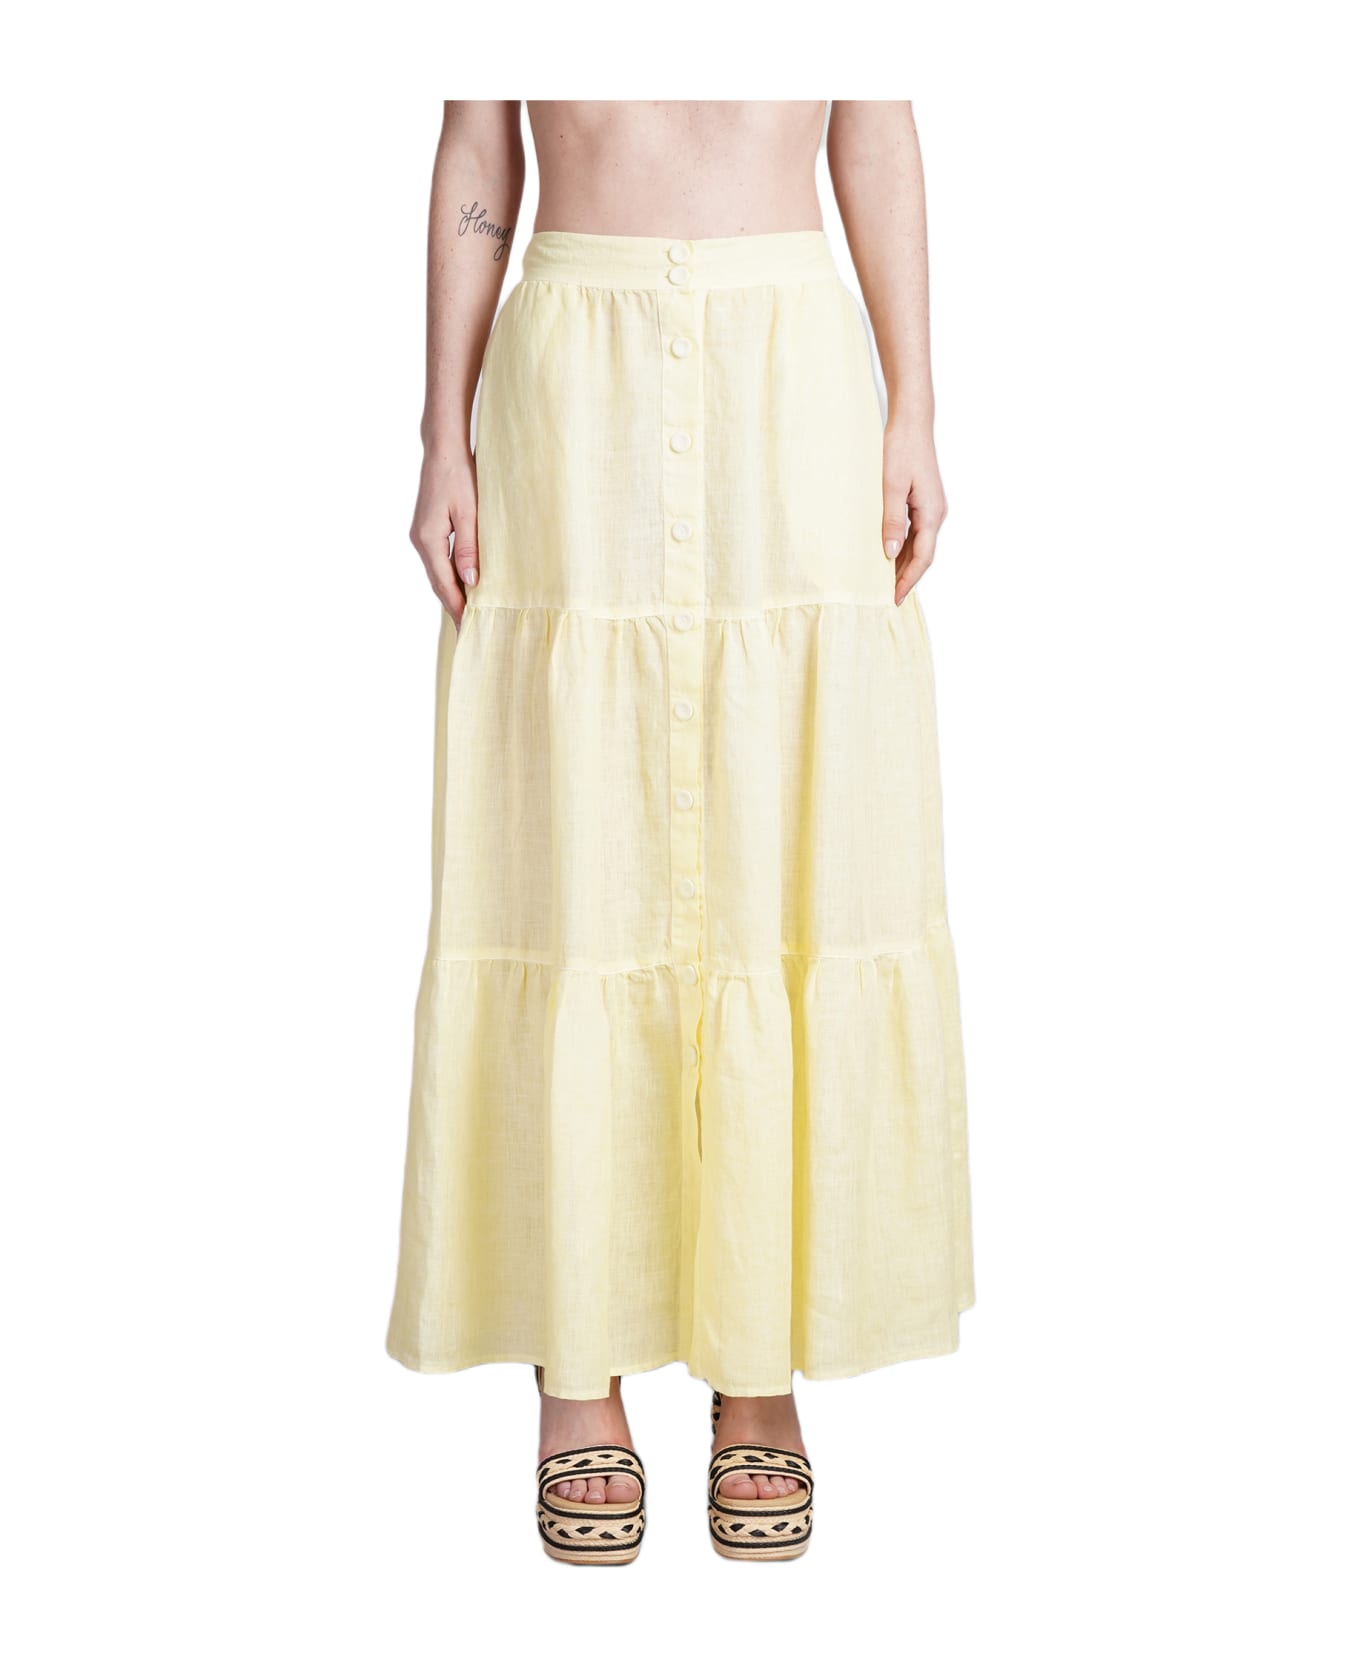 120% Lino Skirt In Yellow Linen - yellow